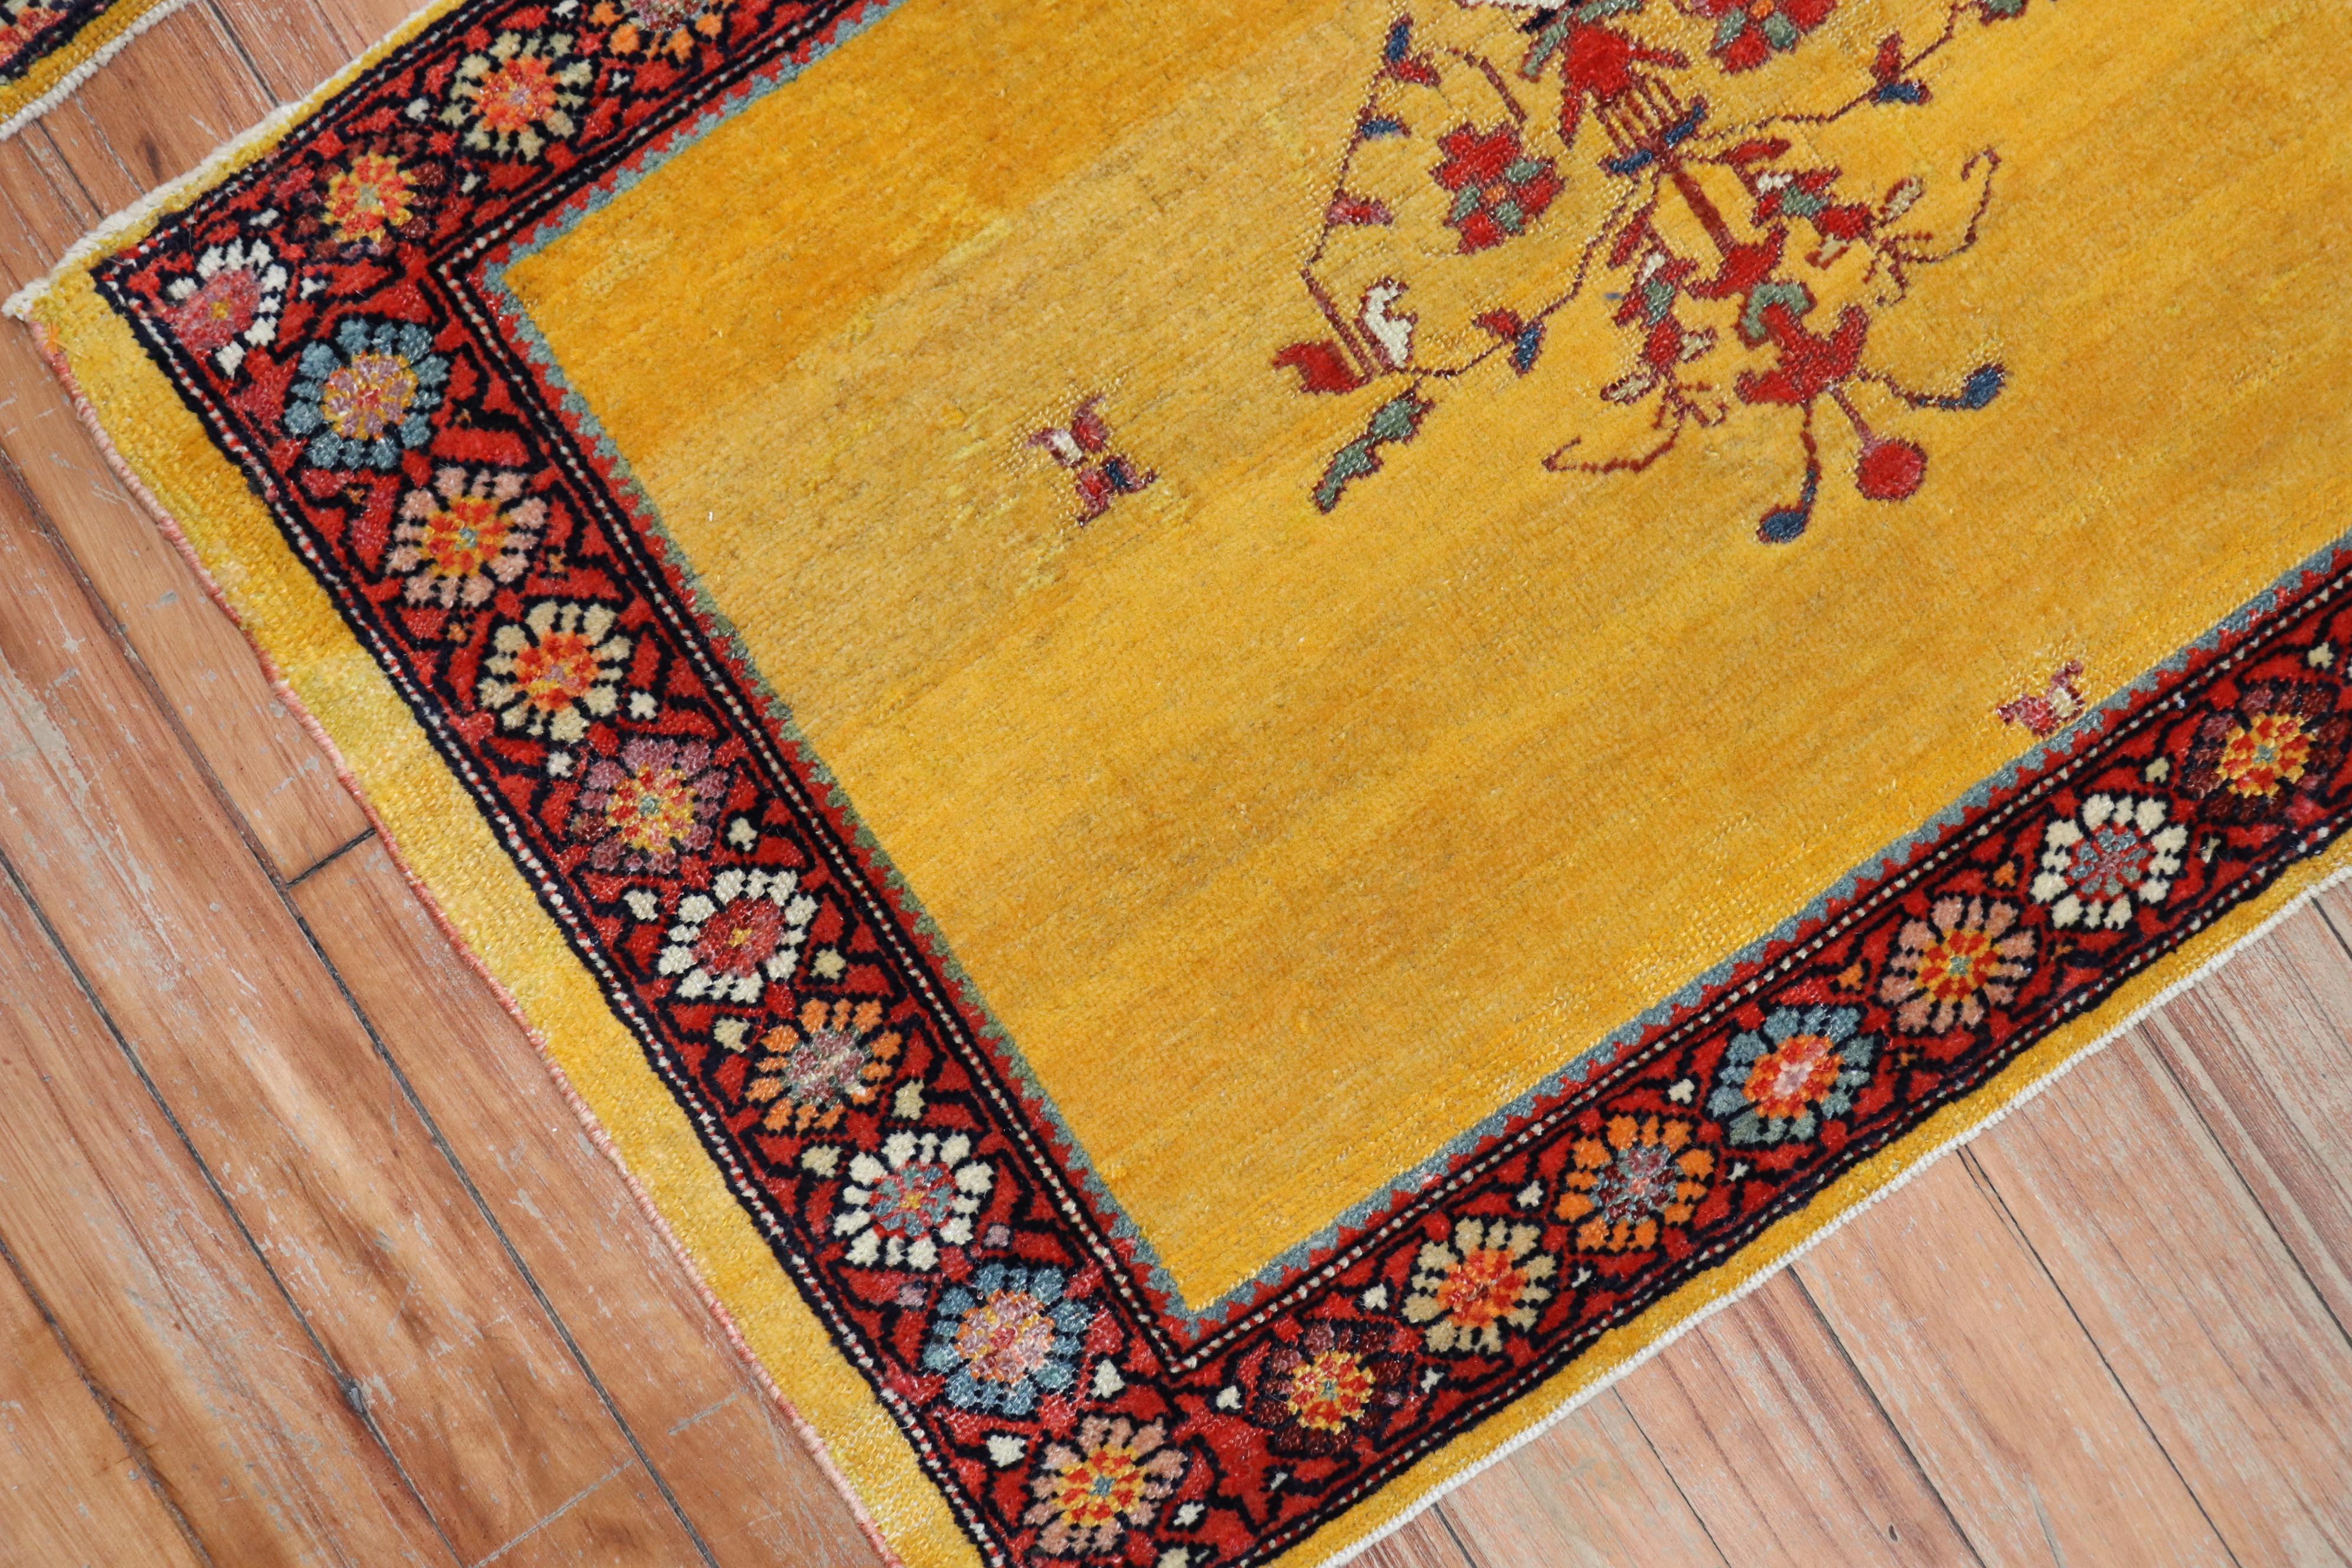 Une paire fantaisiste de tapis persans Ferehan, uniques en leur genre, avec un jaune vif

Mesurant respectivement 19